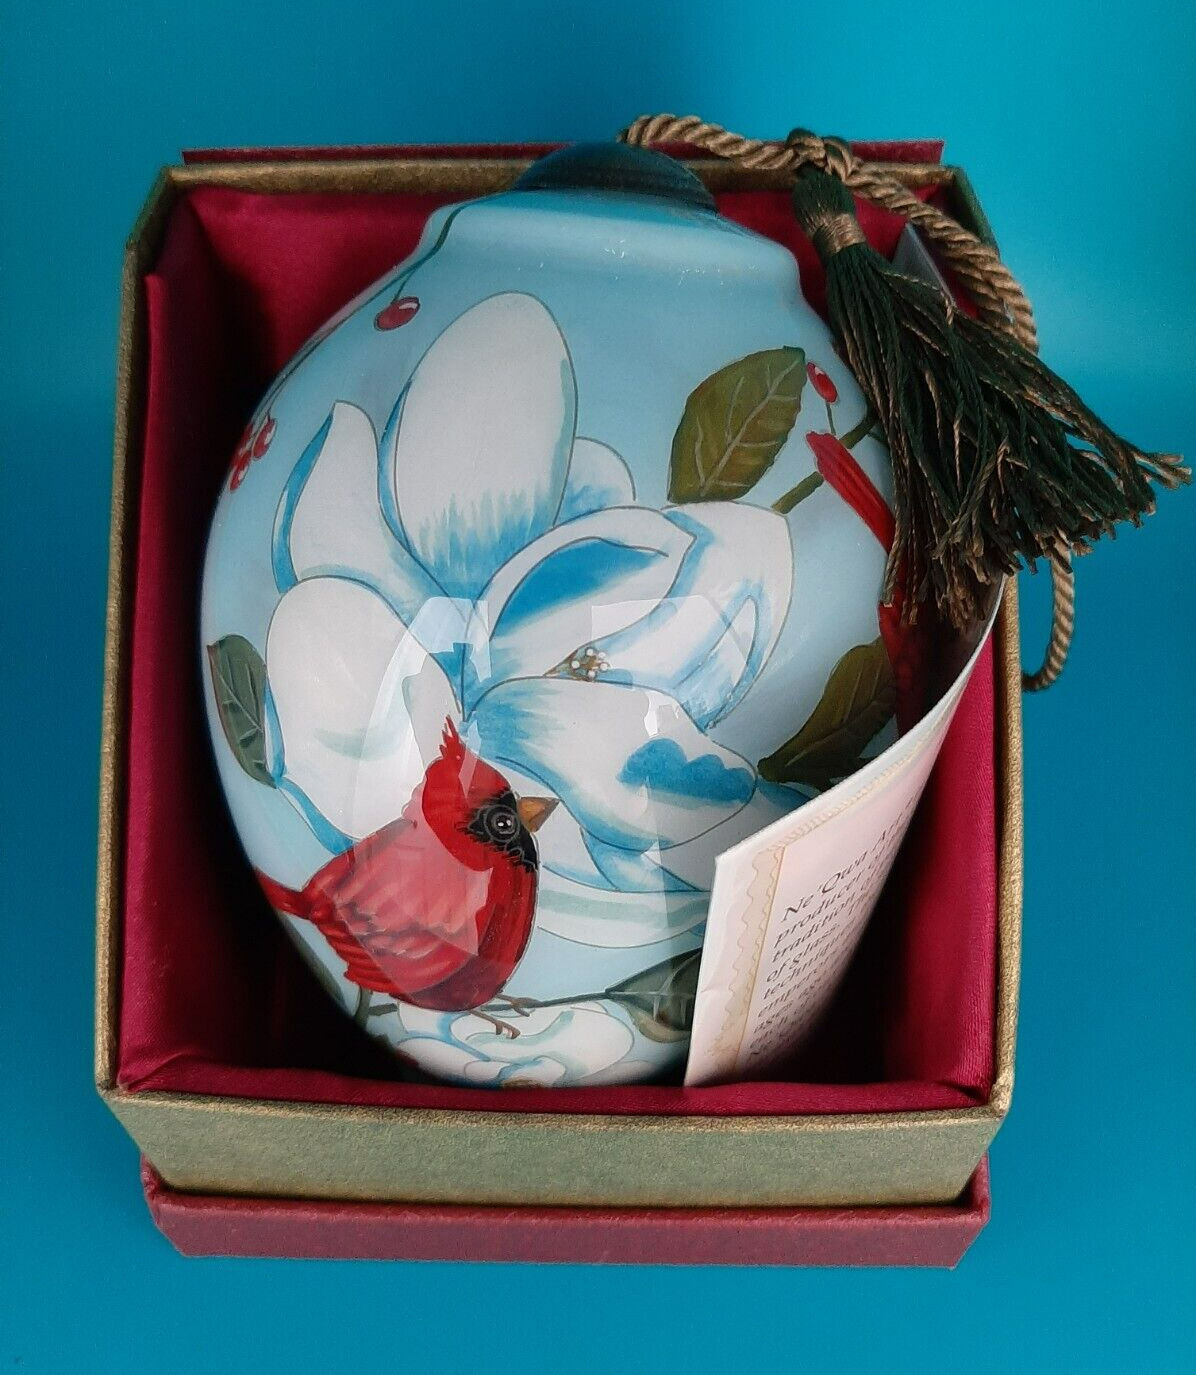 Ne'Qwa Art Hand Painted Blown Glass Ornament “Winter Song” Cardinals 7211122 Box